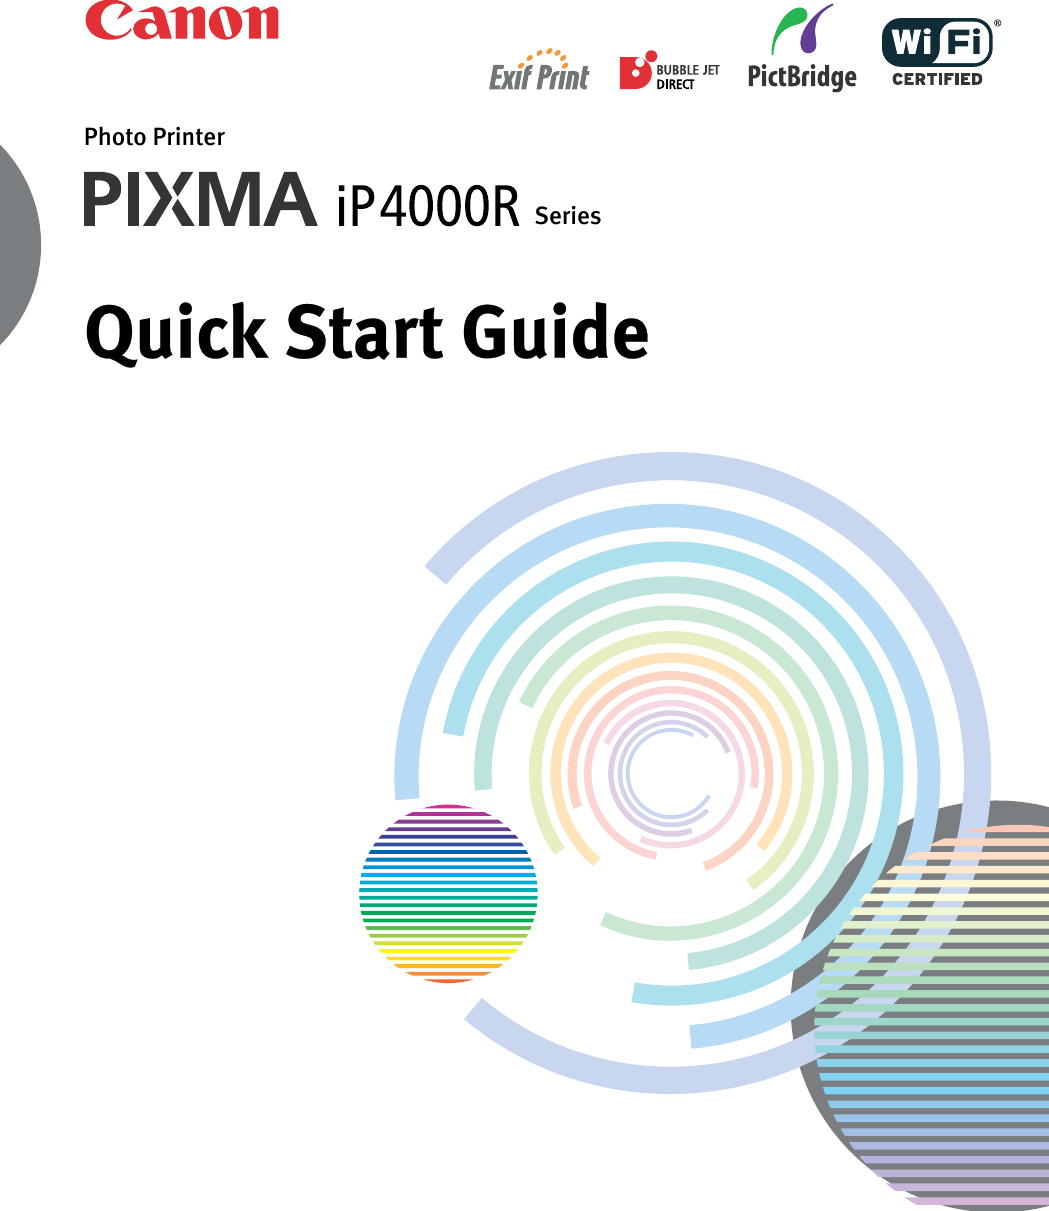 Photo PrinterSeriesQuick Start Guide